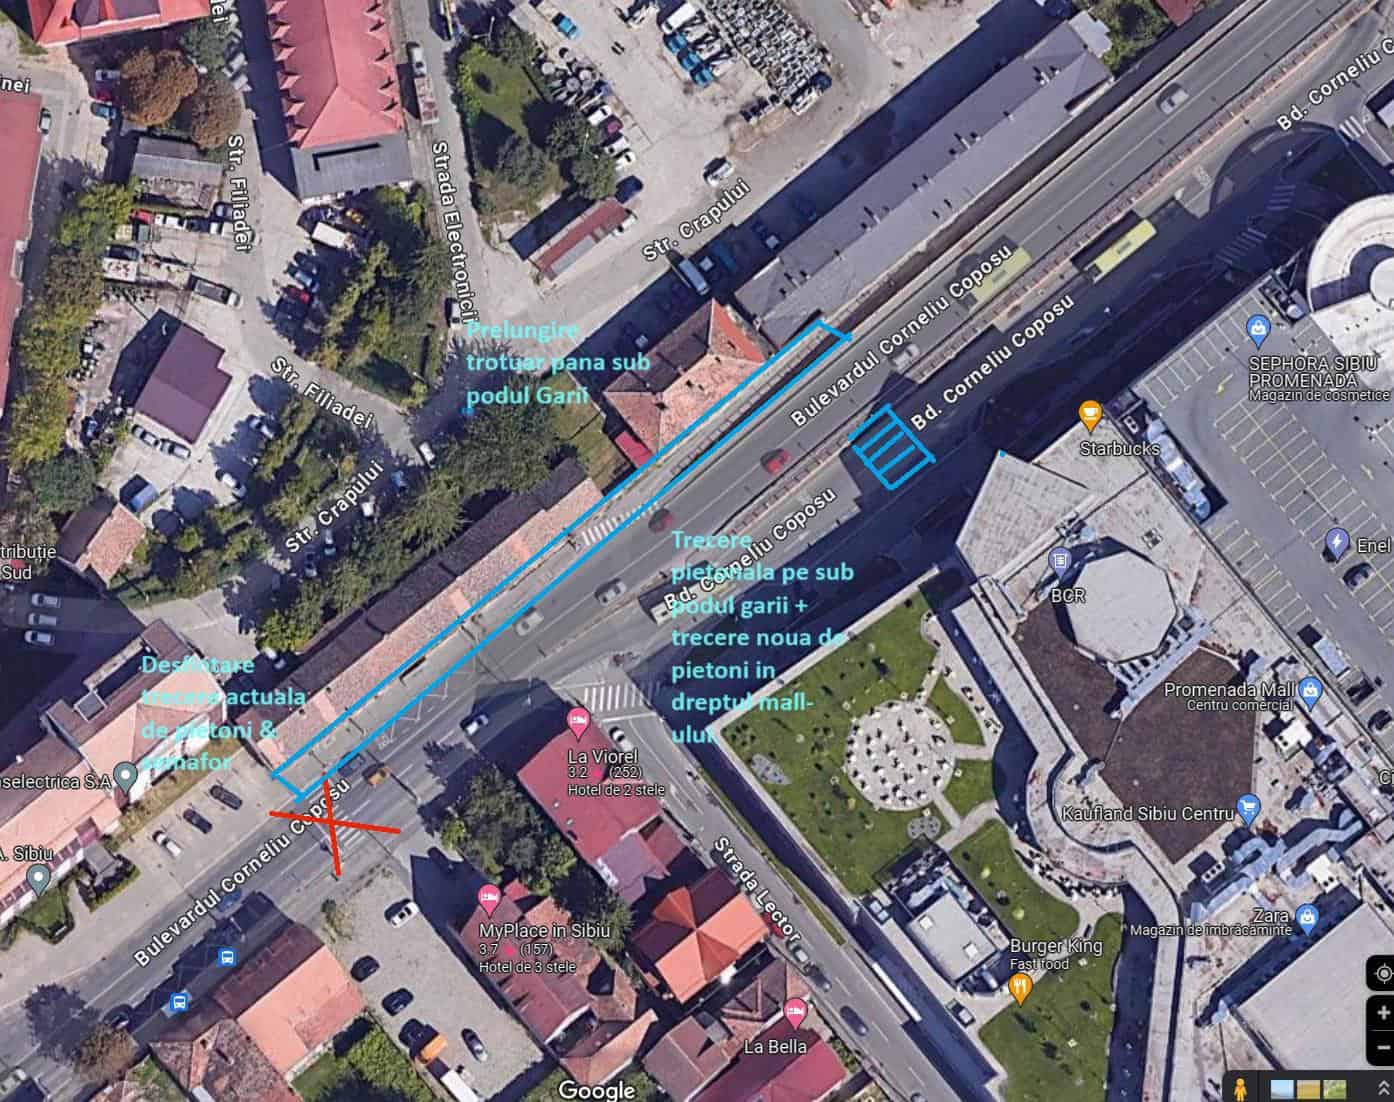 desființarea trecerii de pietoni și prelungirea trotuarului pe sub podul gării, propunerea unui sibian pentru fluidizarea traficului în zonă